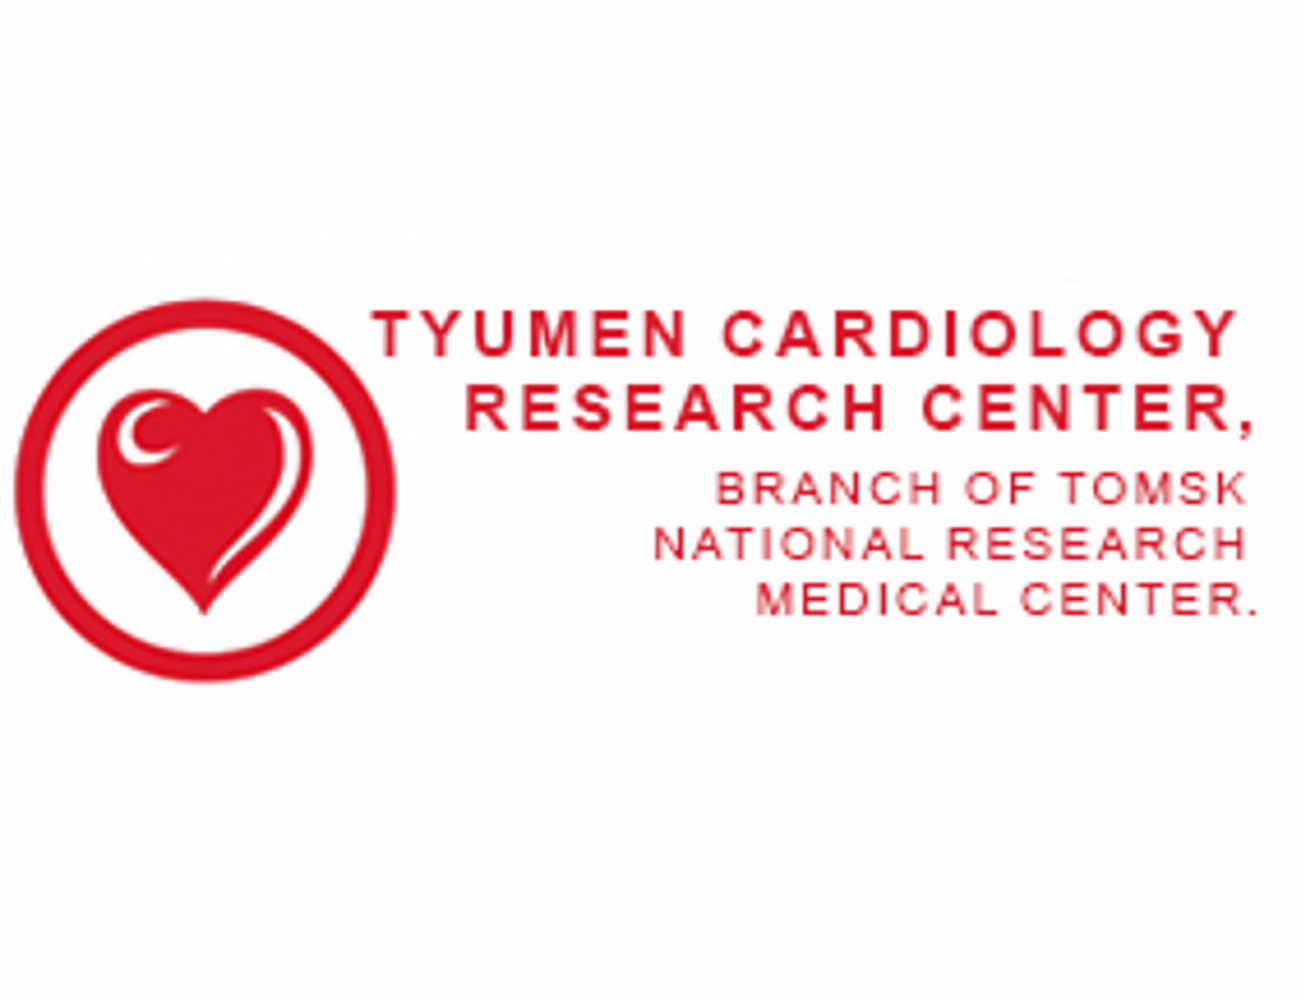 ICNC 11, Nuclear Cardiology and Cardiac CT – European Society of Cardiology